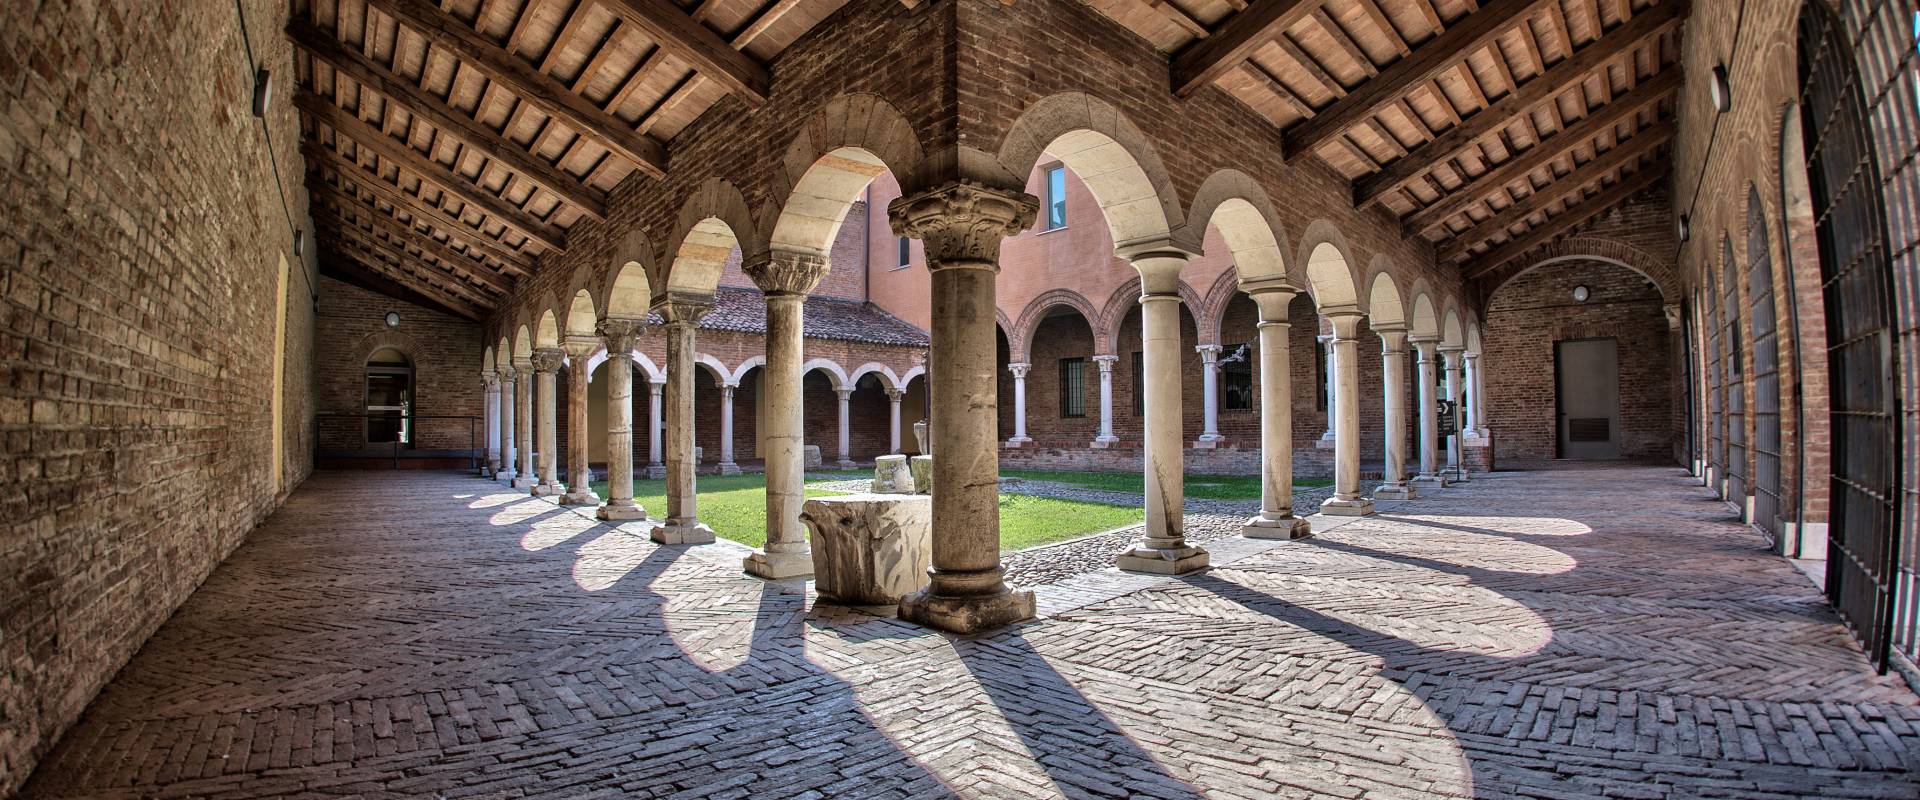 Museo della cattedrale - Chiostro 9 photo by Andrea Parisi